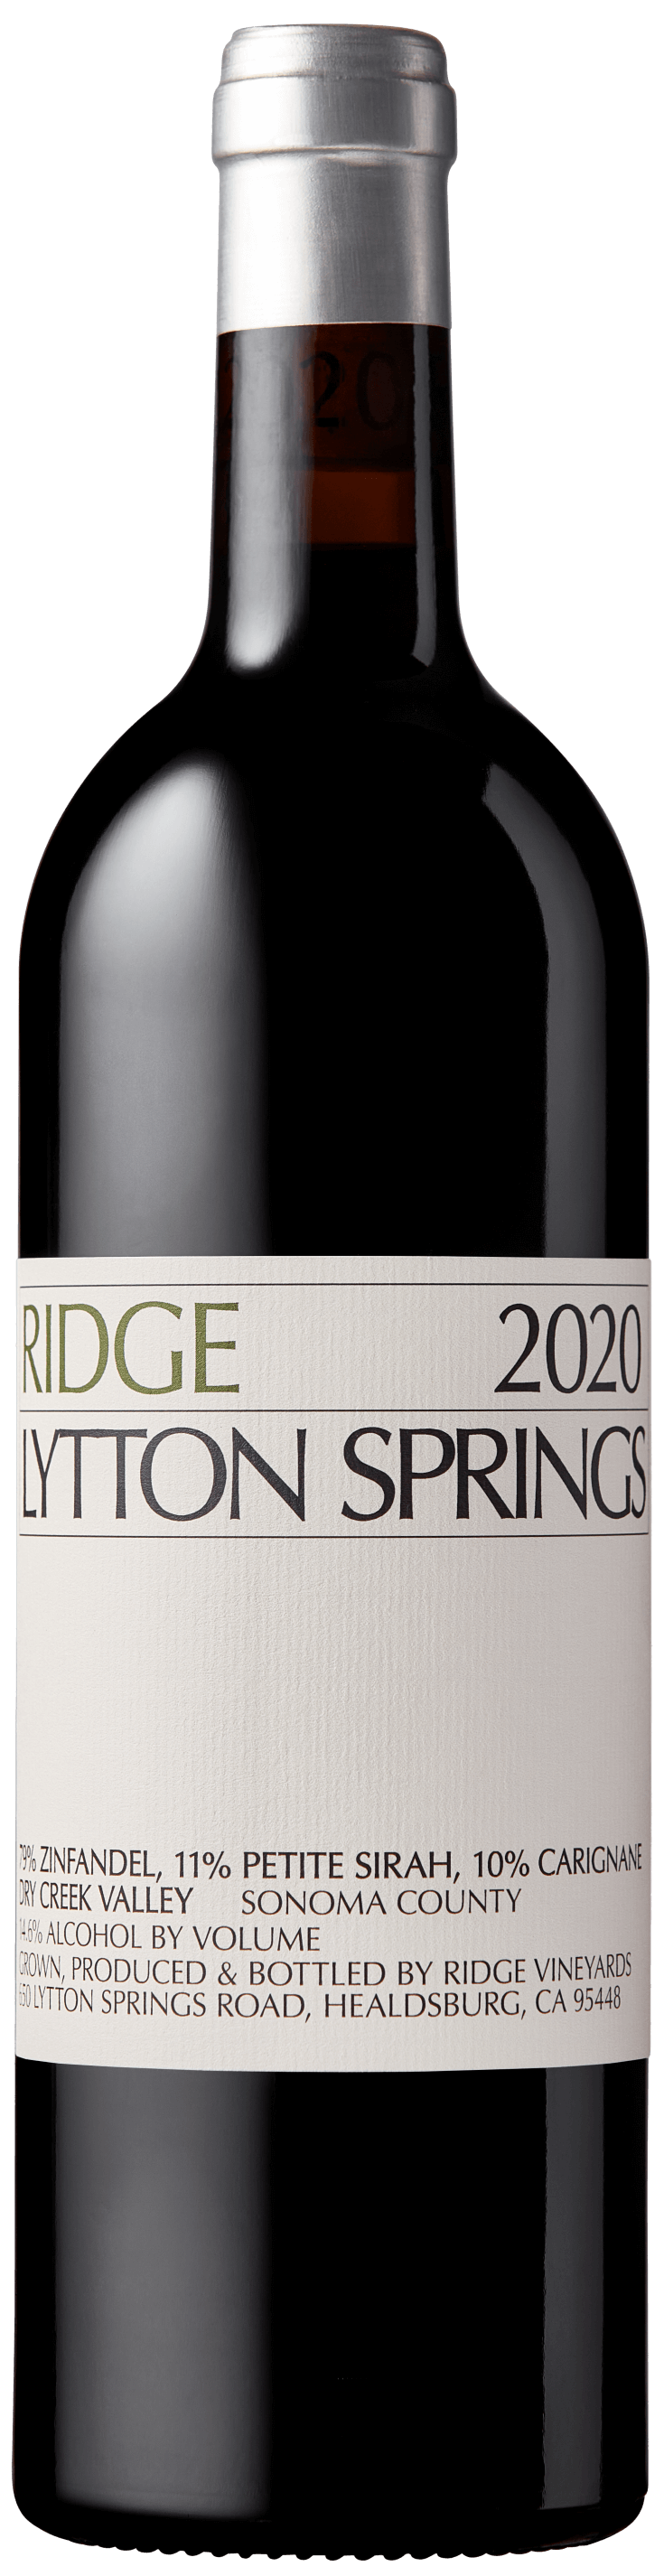 2020 Lytton Springs